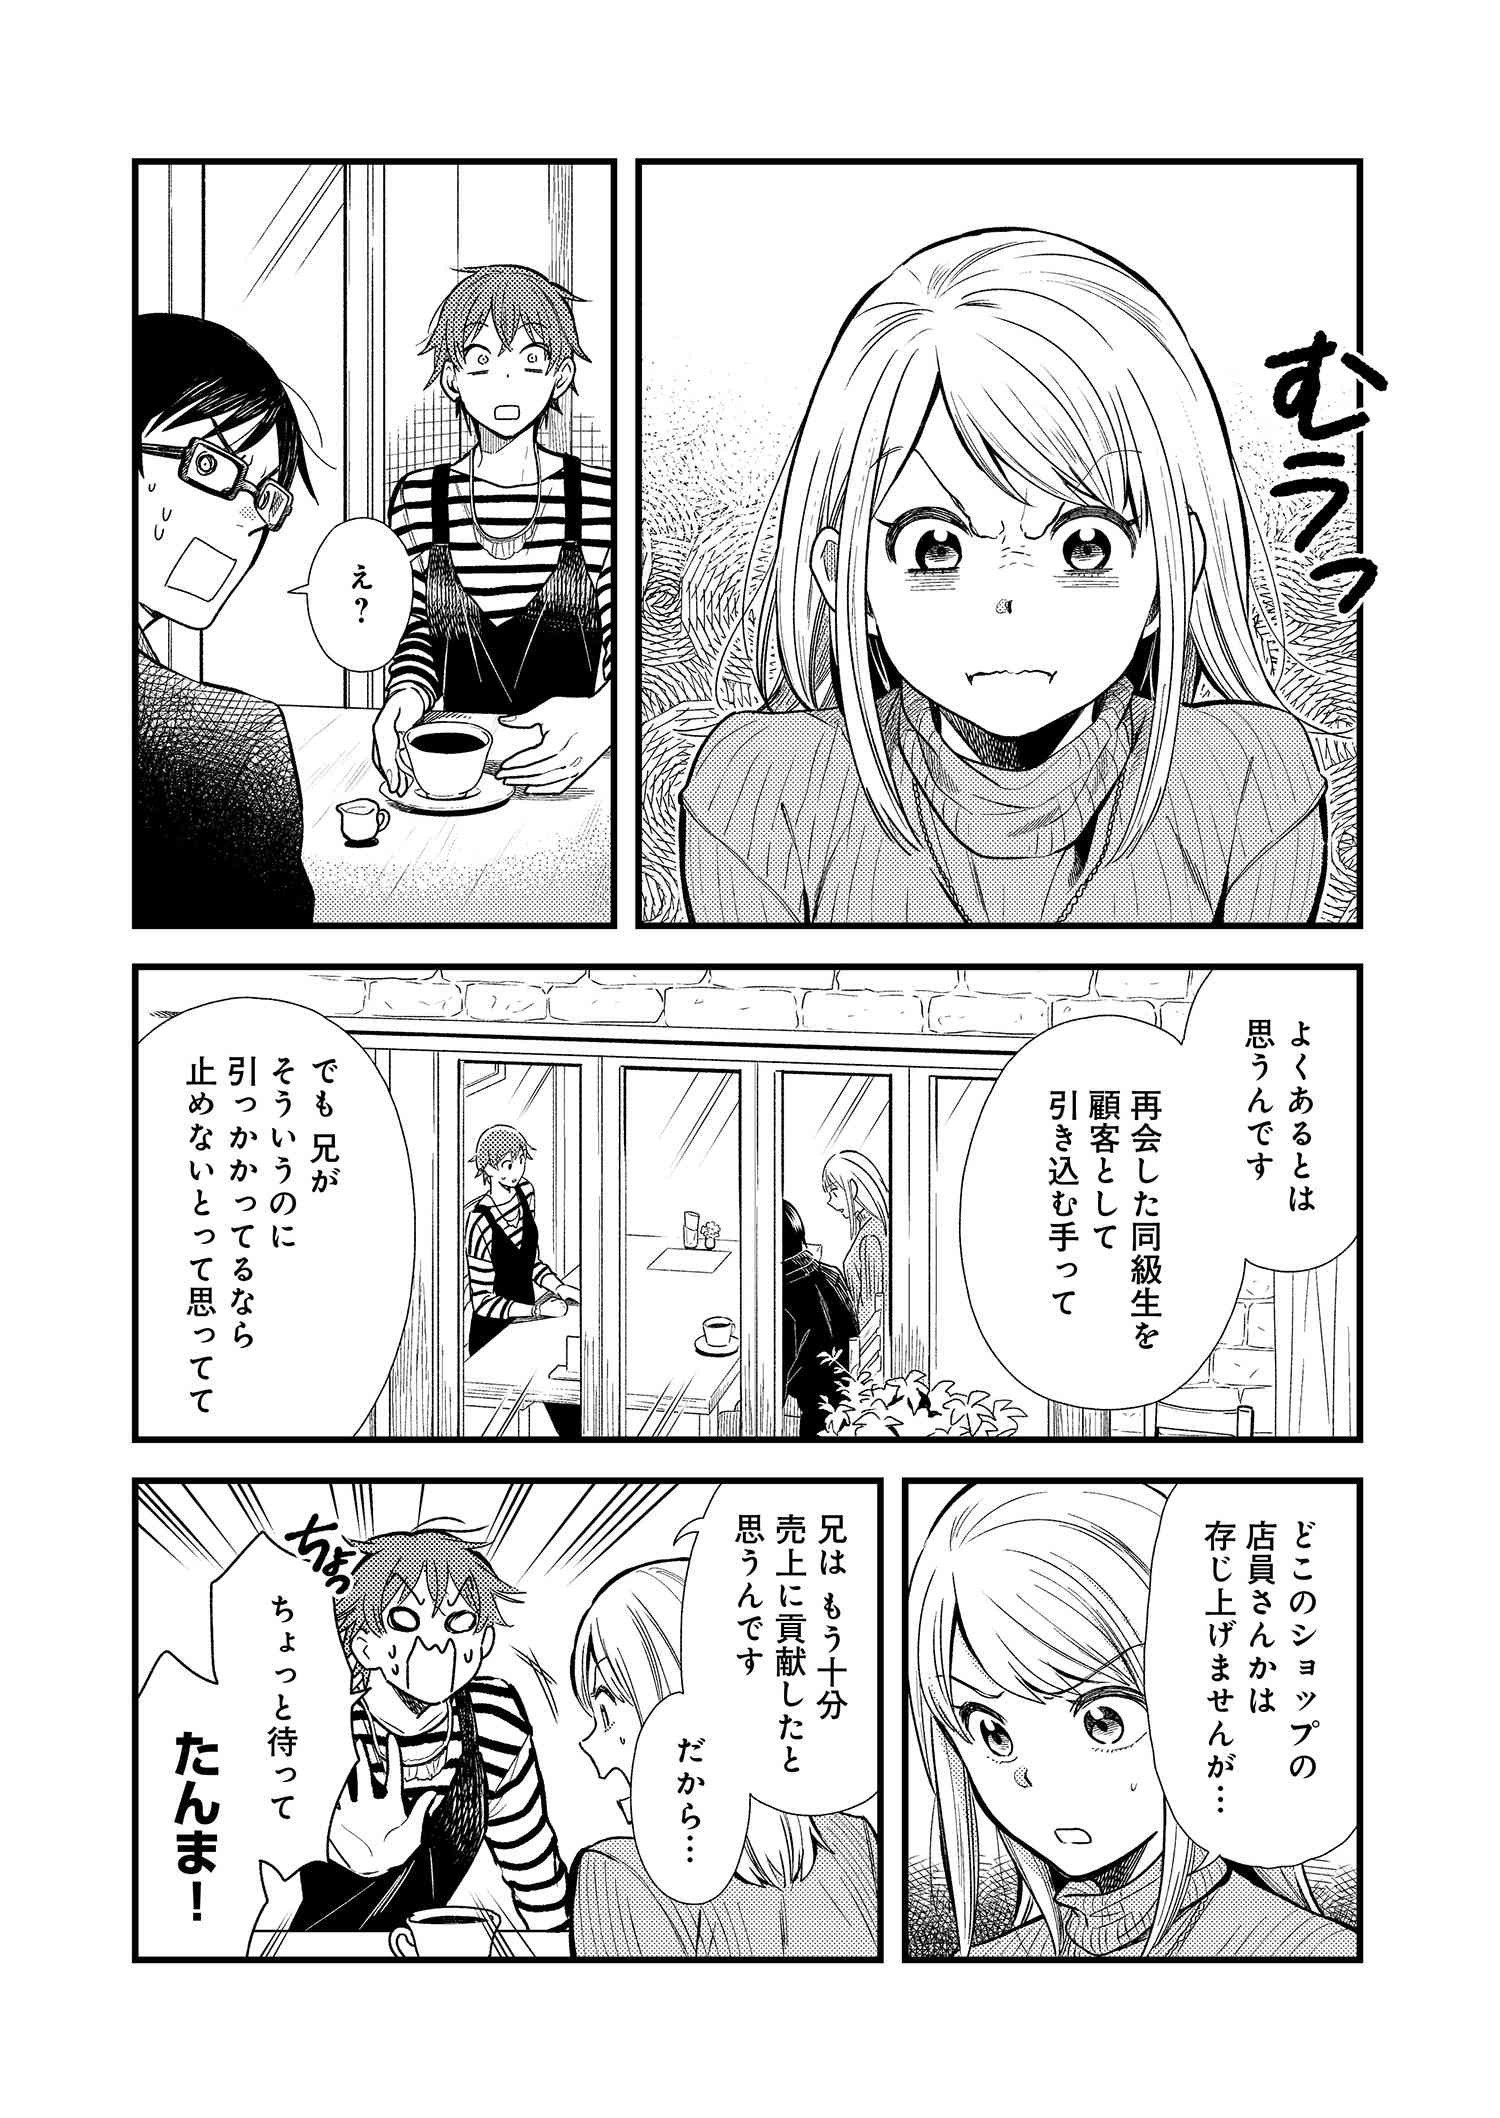 Fuku o Kiru Nara Konna Fuu ni - 服を着るならこんなふうに - Chapter 16 - Page 4